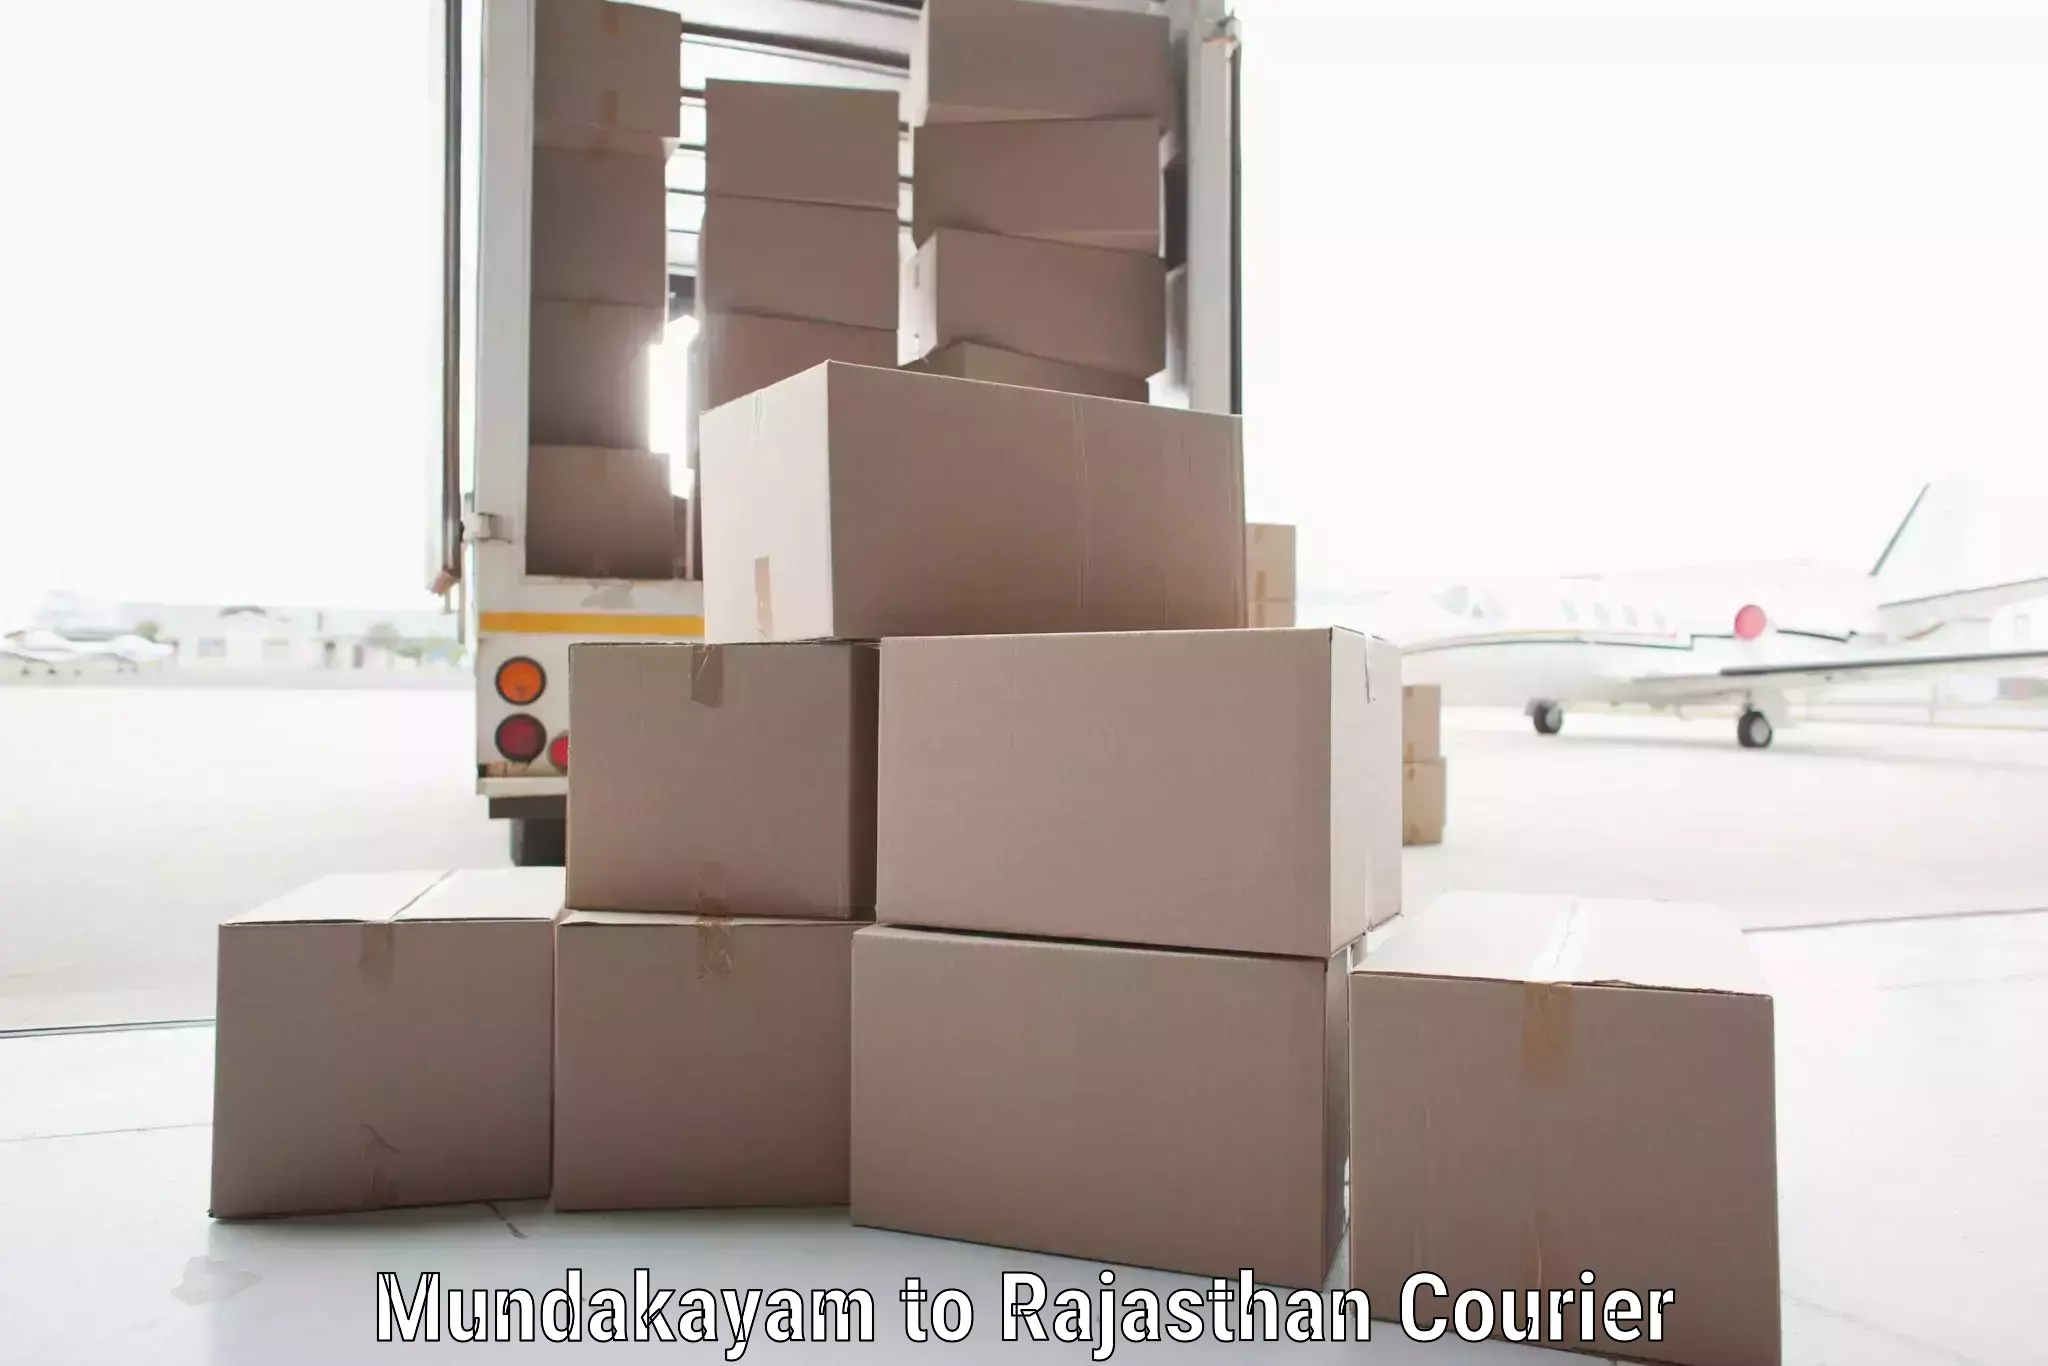 Fast shipping solutions Mundakayam to Asind